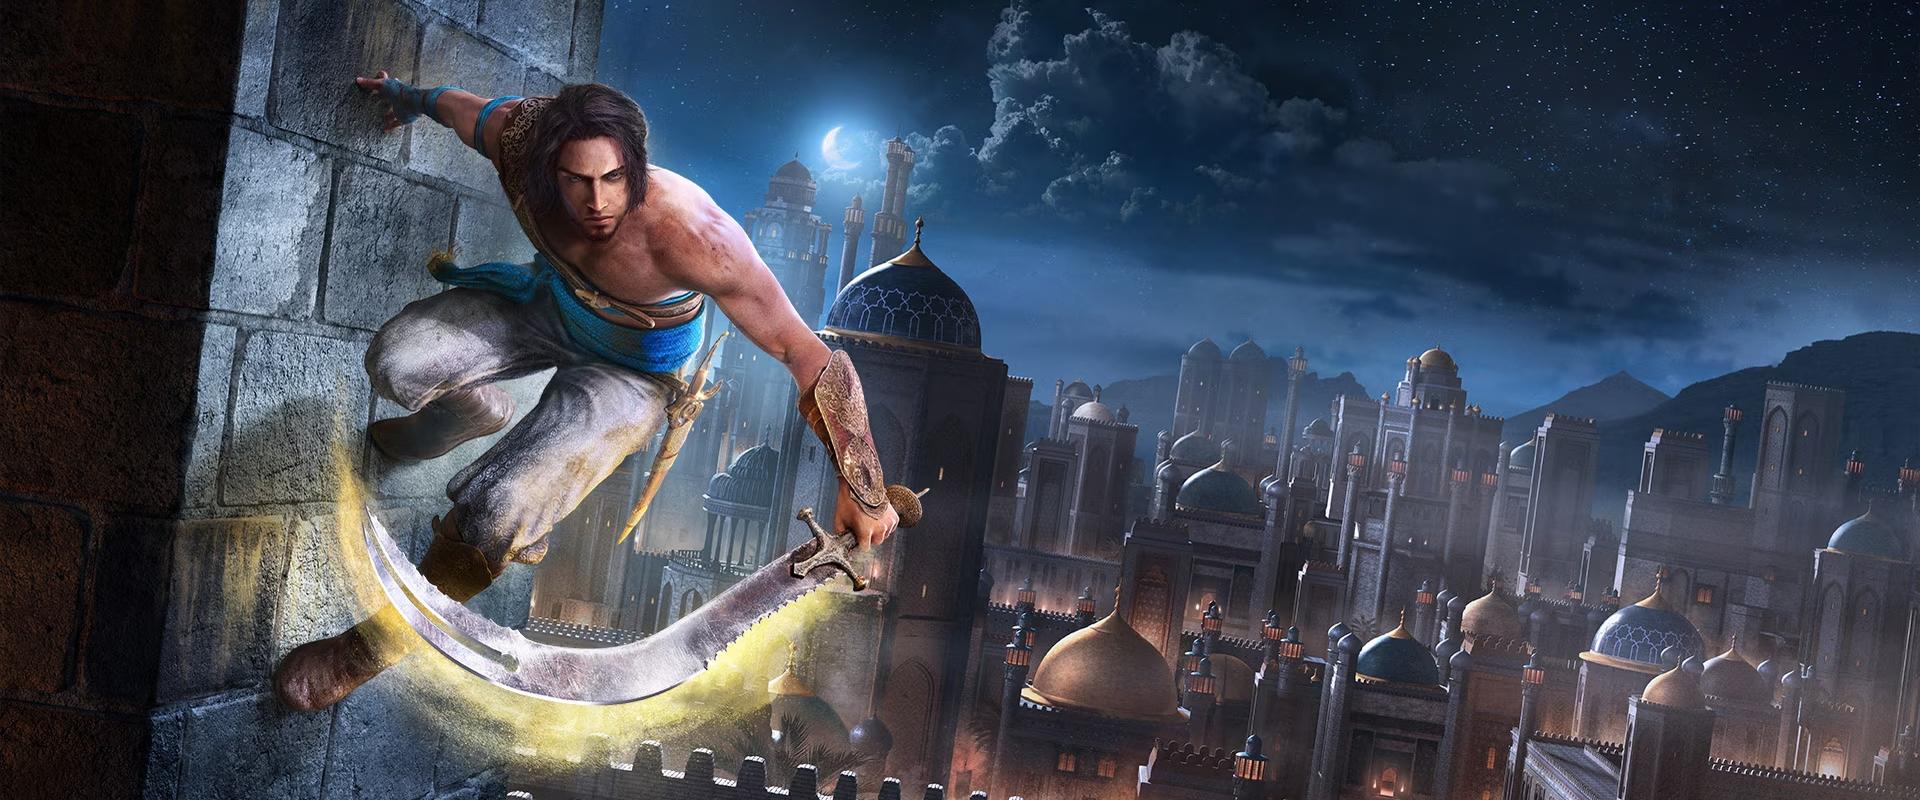 Ez már a negyedik! - Újabb stúdió dolgozik a Prince of Persia: The Sands of Time remaken